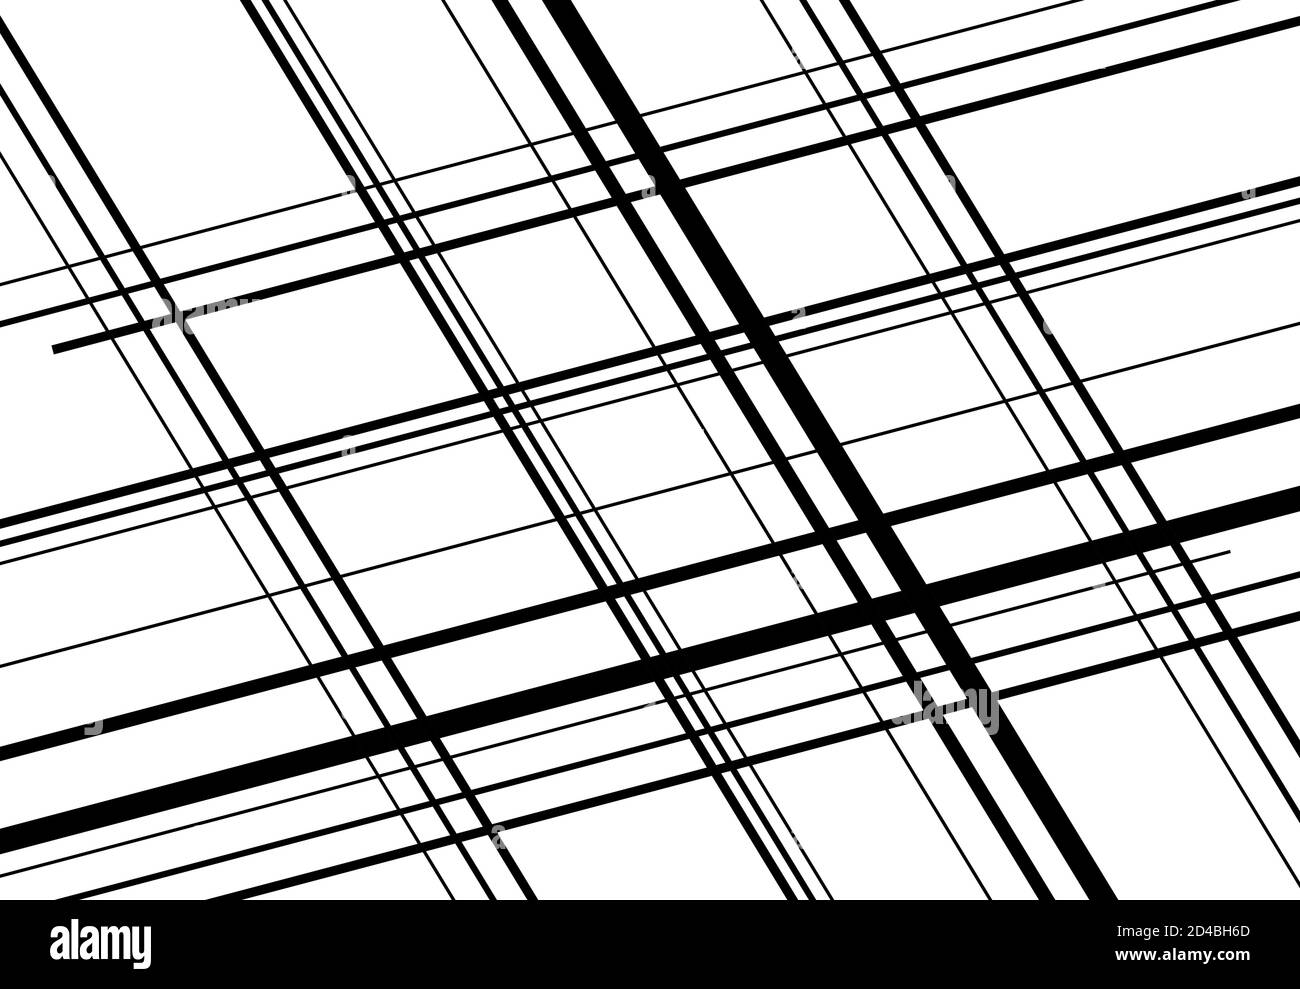 Diagonale, Neigung, schräges und schräges Gitter, abstrakter Netzhintergrund, Muster Stock Vektor